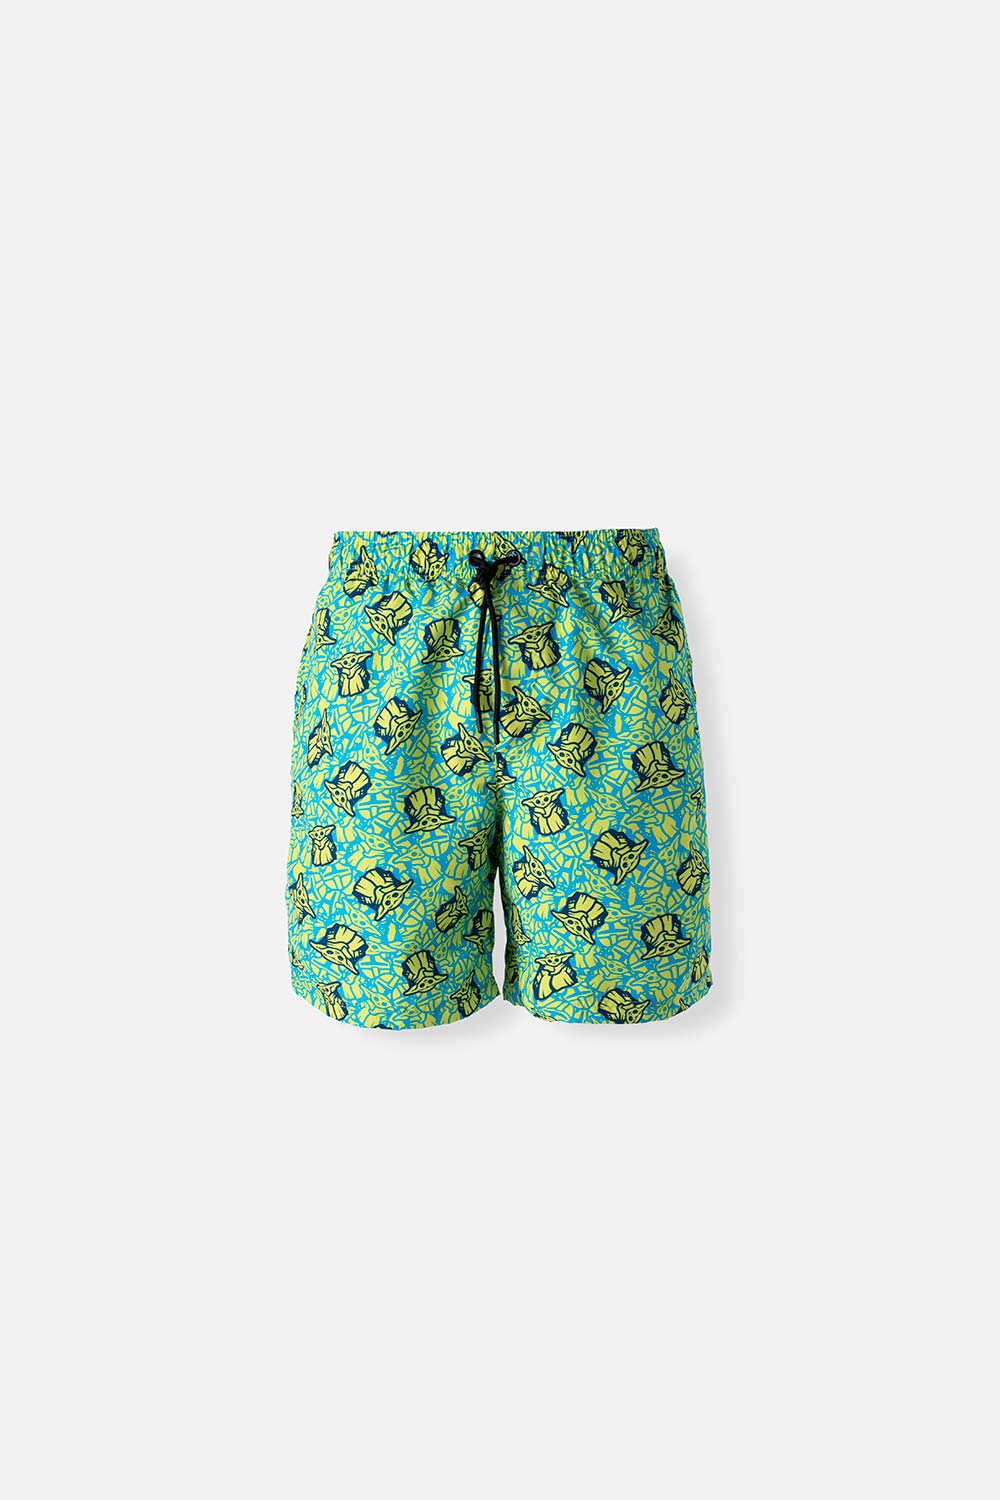 Pantaloneta de baño de Mandalorian con resorte verde para hombre S-0